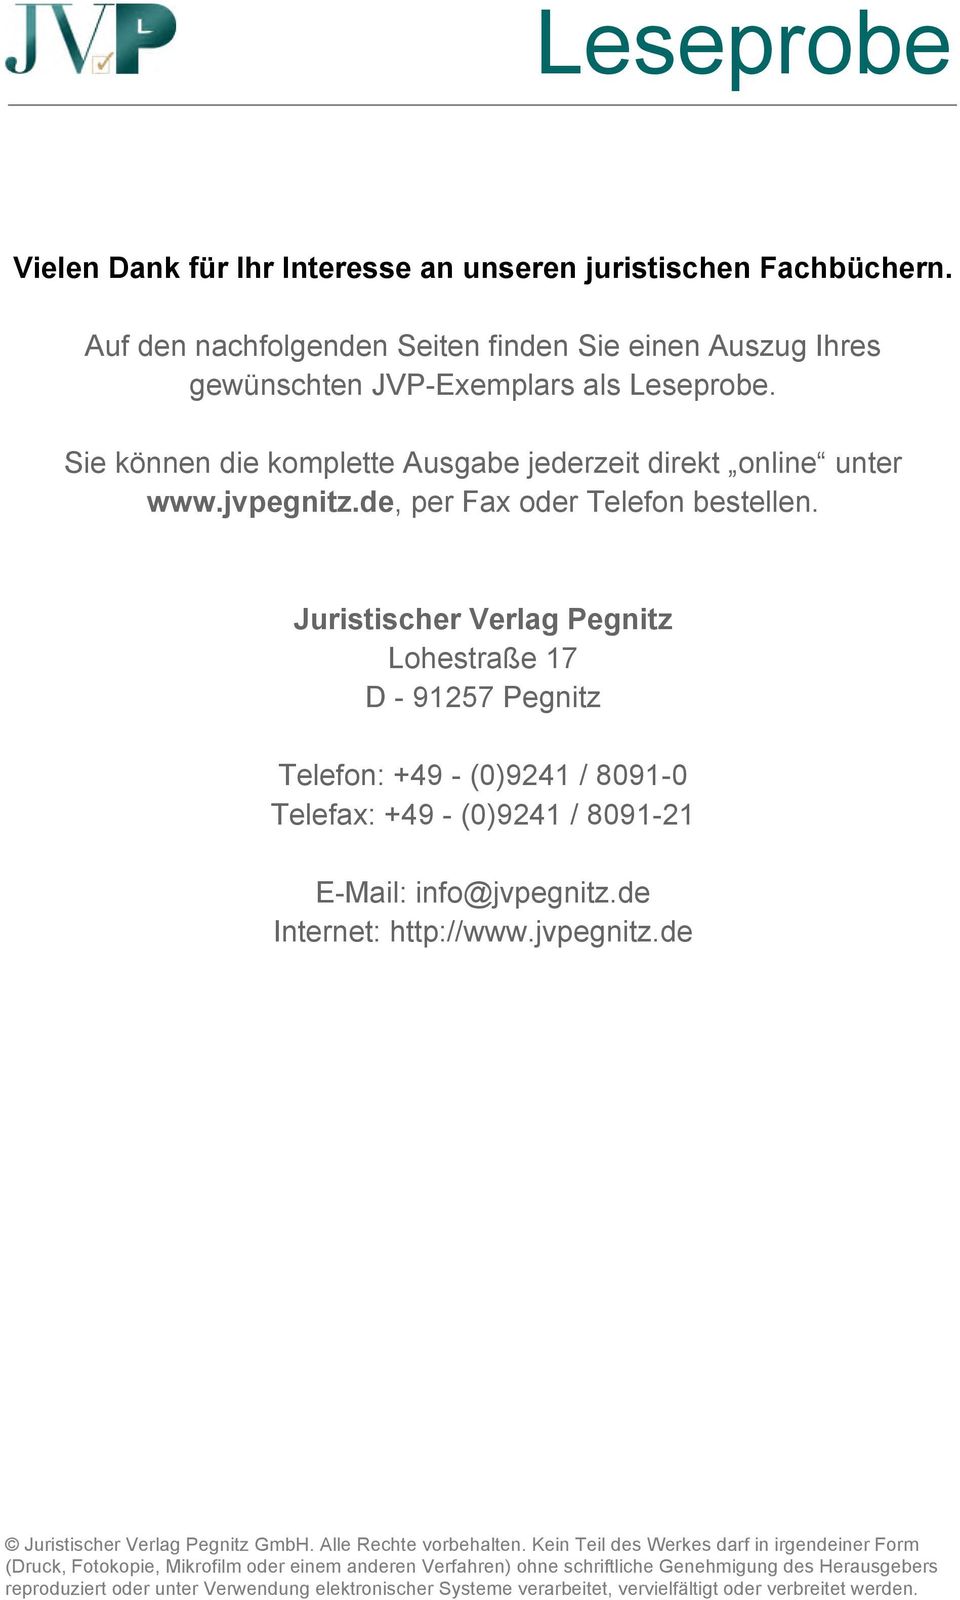 Juristischer Verlag Pegnitz Lohestraße 17 D - 91257 Pegnitz Telefon: +49 - (0)9241 / 8091-0 Telefax: +49 - (0)9241 / 8091-21 E-Mail: info@jvpegnitz.de Internet: http://www.jvpegnitz.de Juristischer Verlag Pegnitz GmbH.